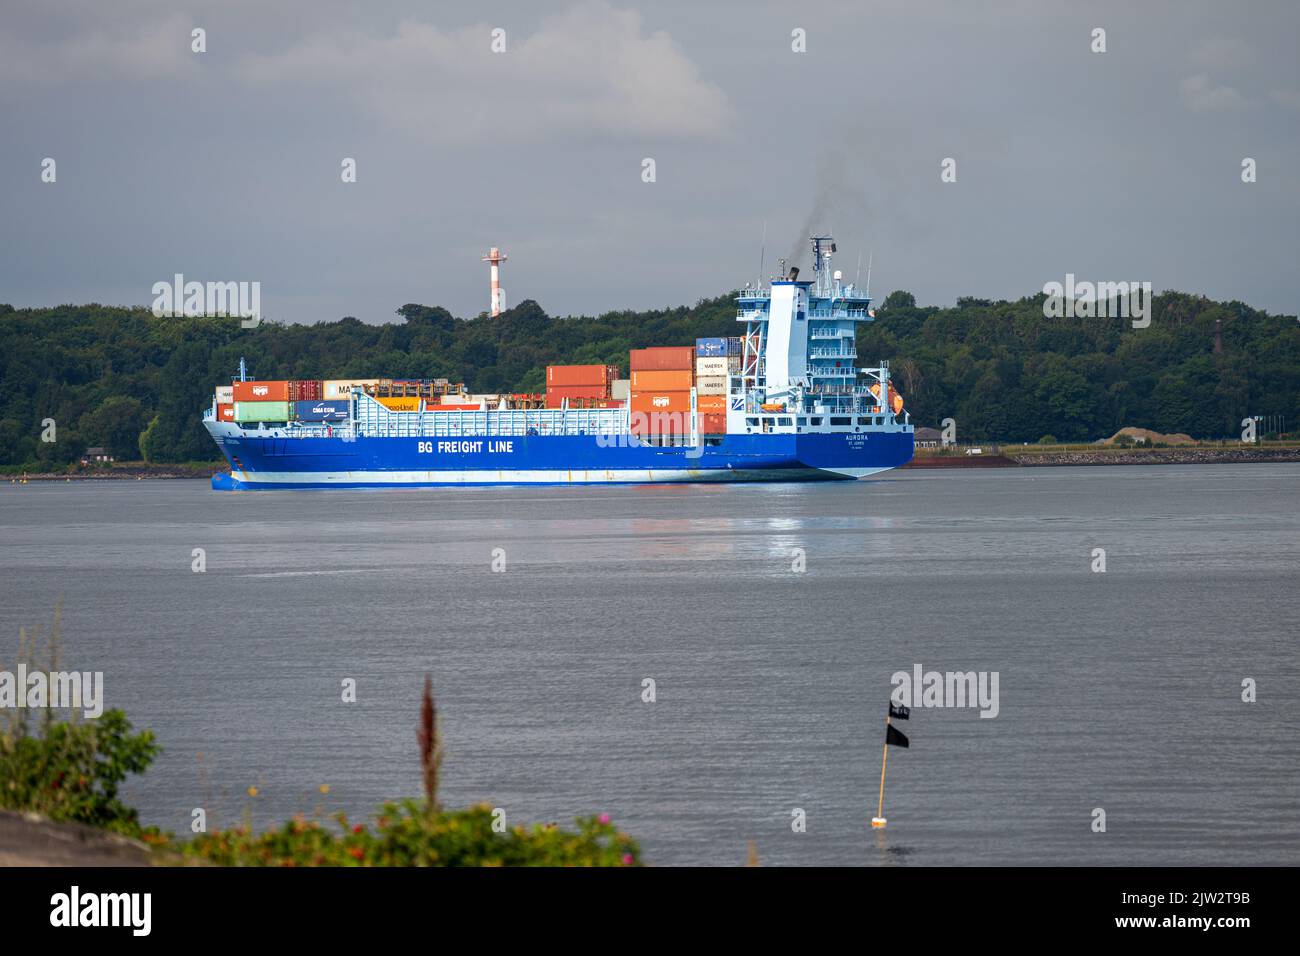 Der Containerfrachter Aurora aus der Ostsee kommend fährt in Richtung Nord-Ostsee-Kanal in der Kieler Förde Foto de stock